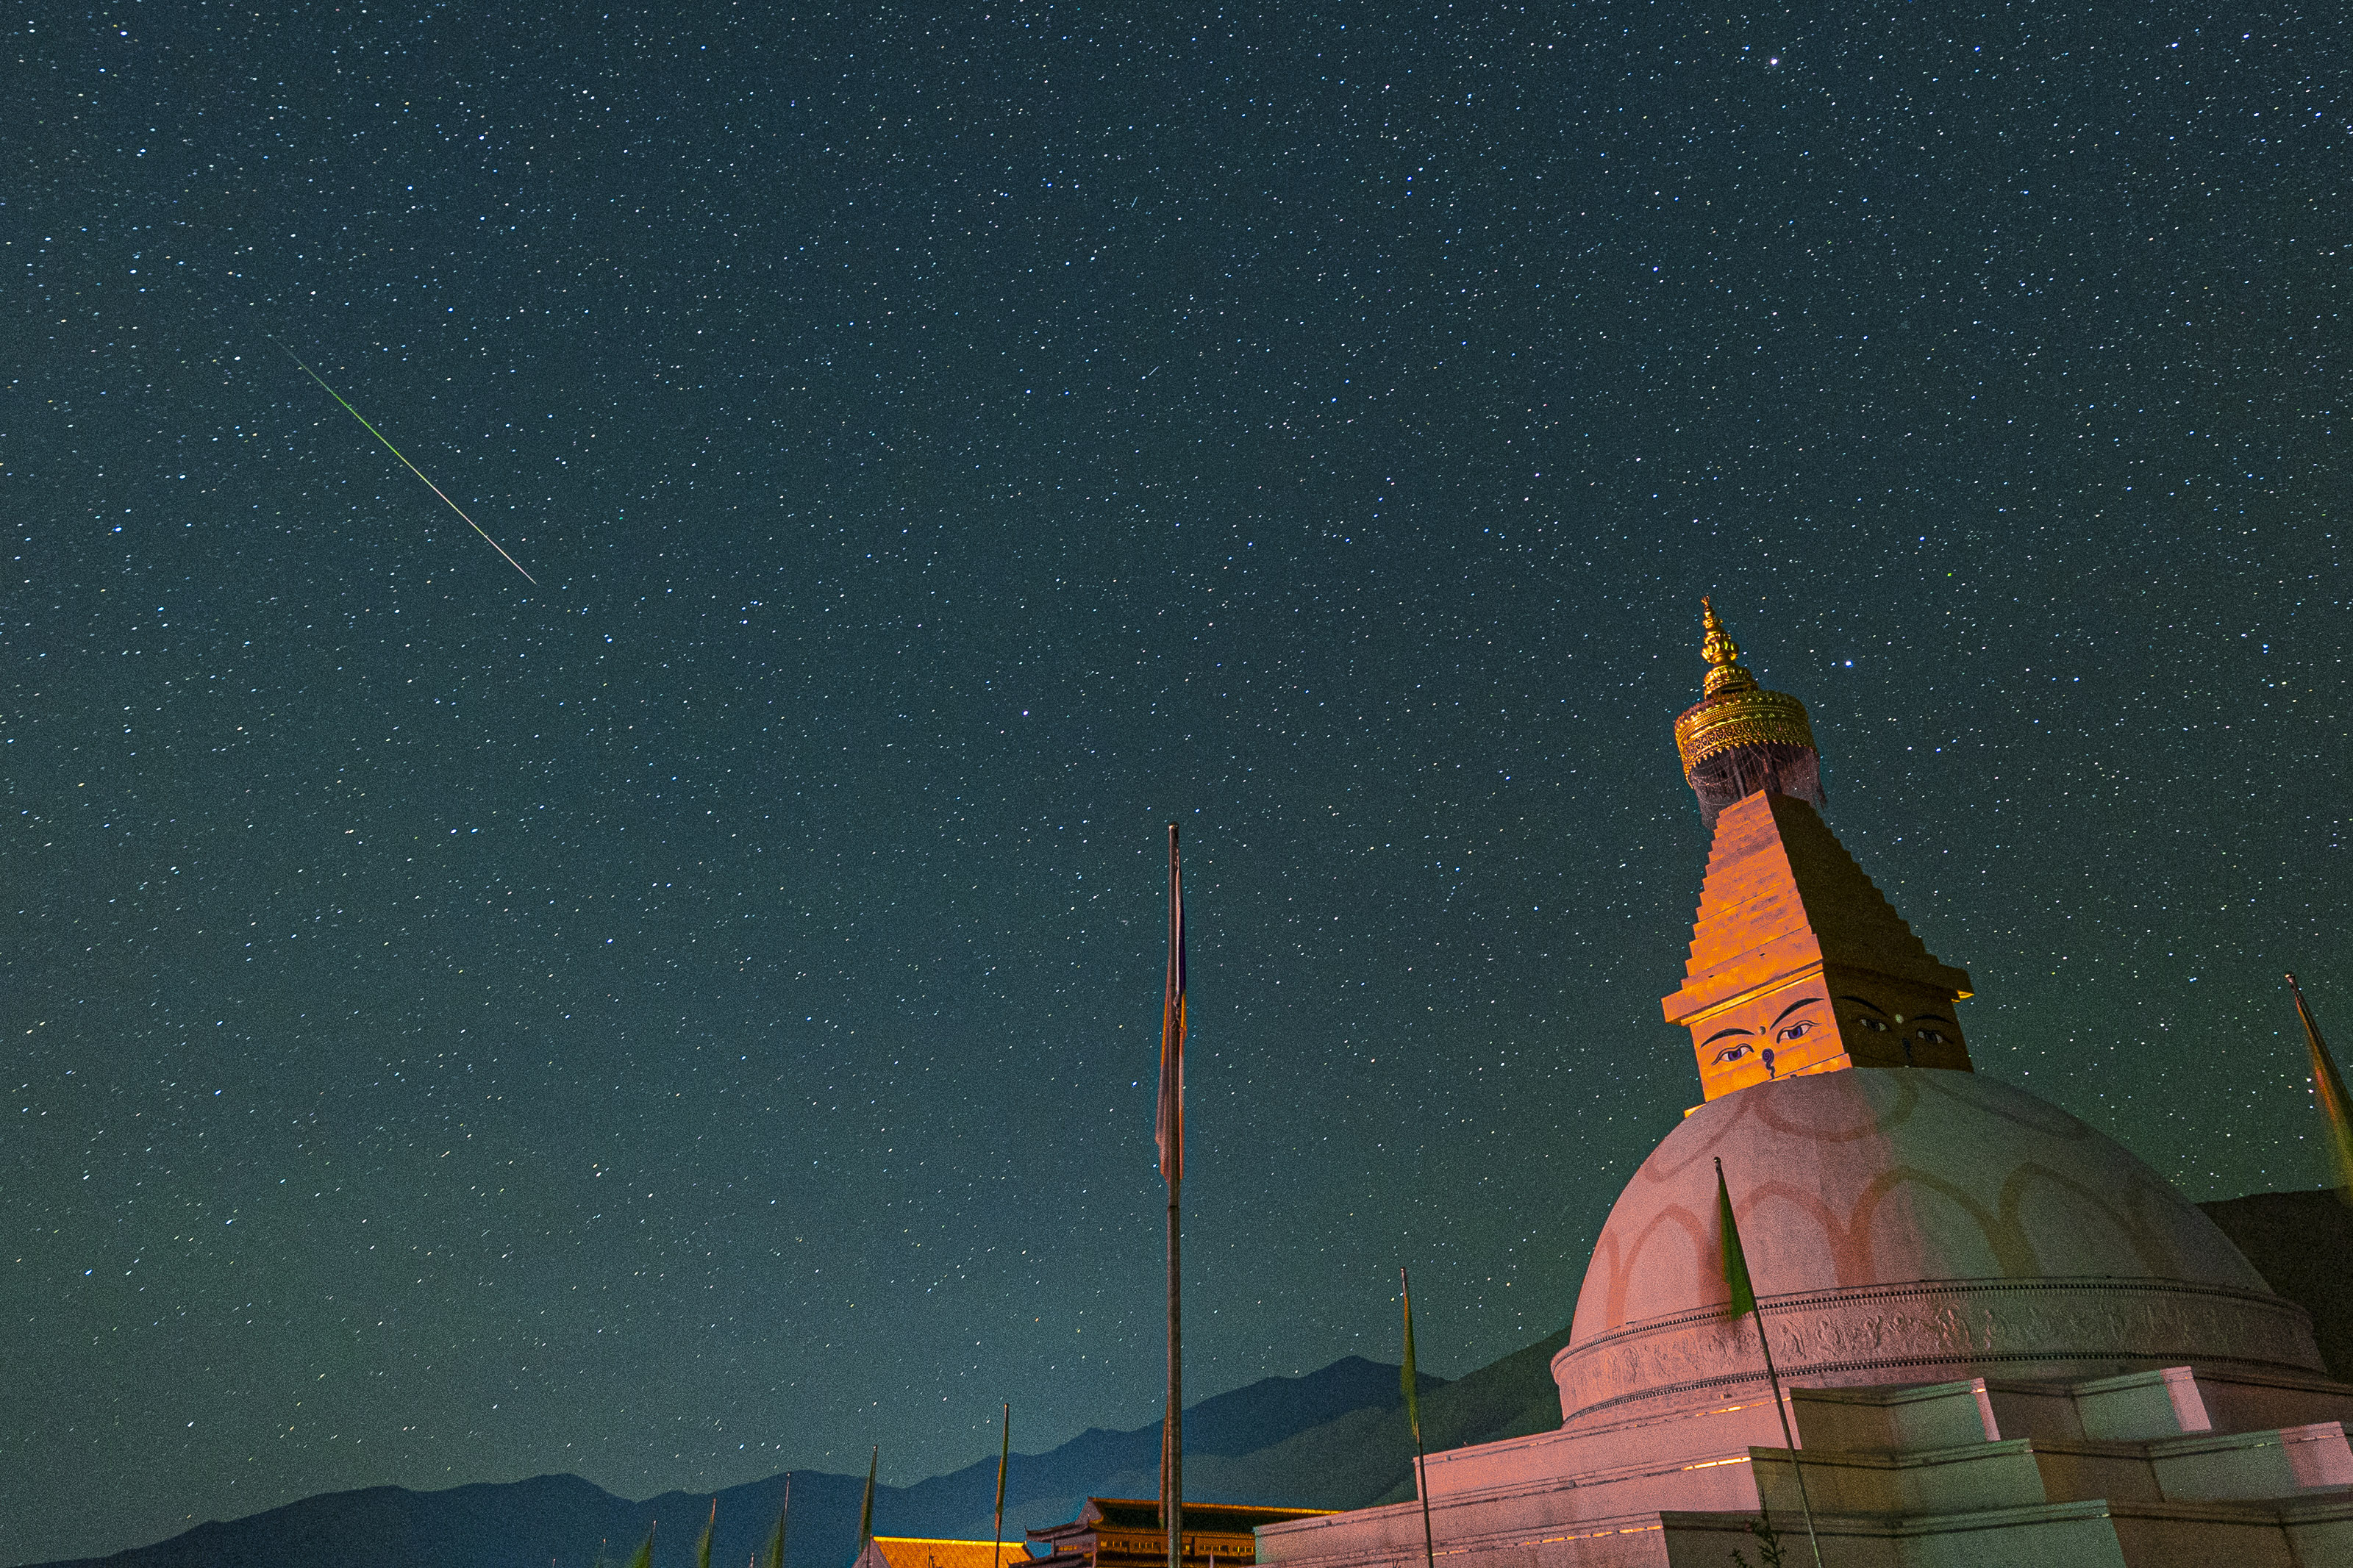 Un meteorito Perside cruza el cielo sobre un gran edificio abovedado.